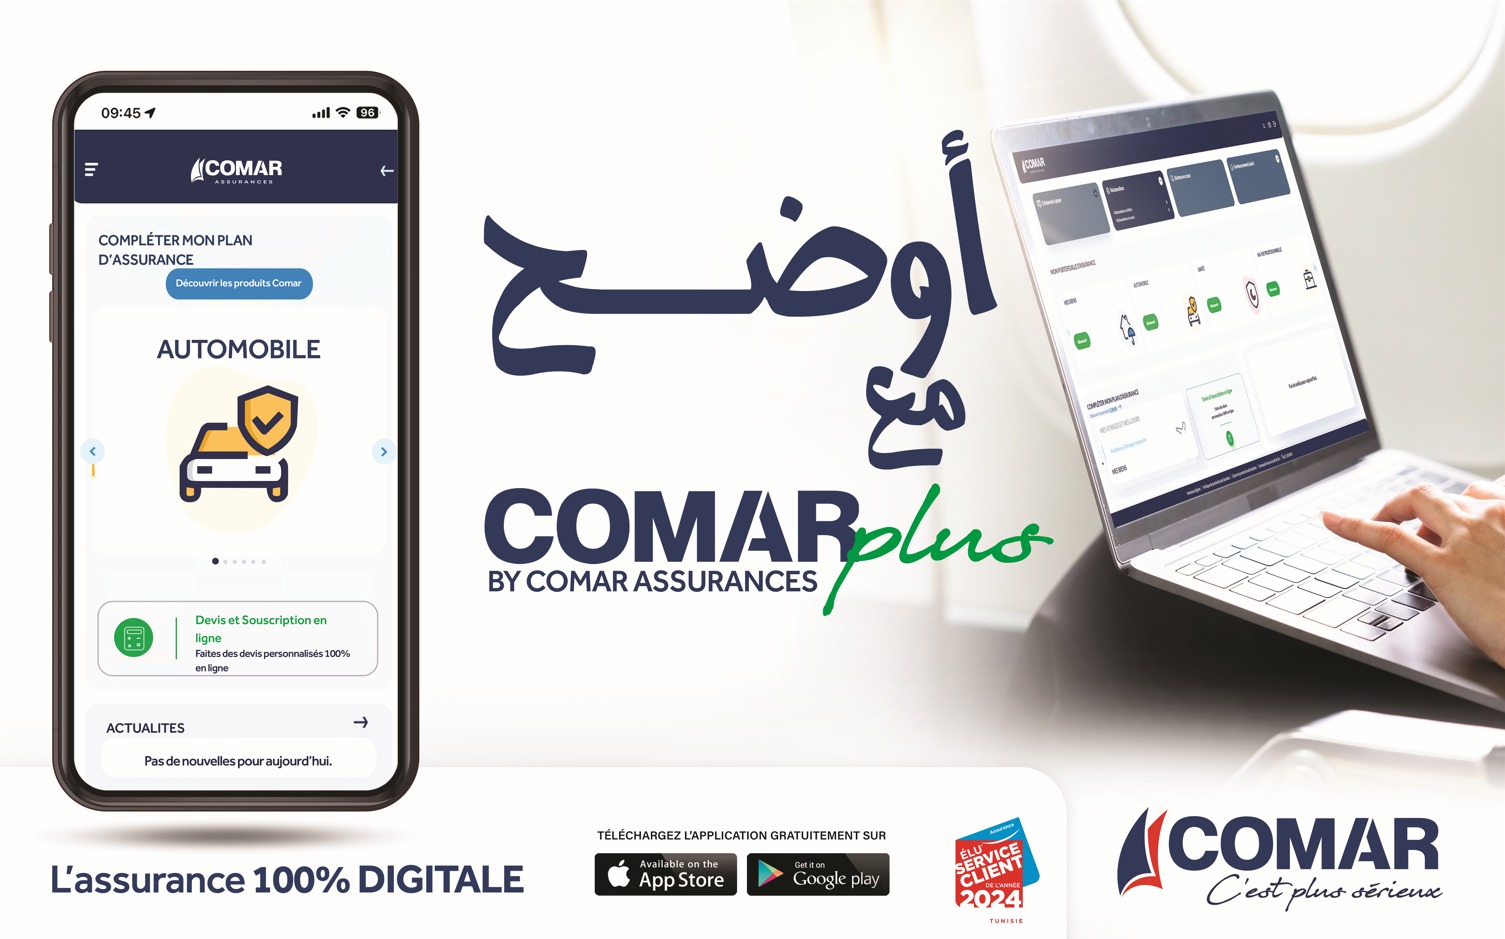 l lancement de sa plateforme digitale COMAR Plus